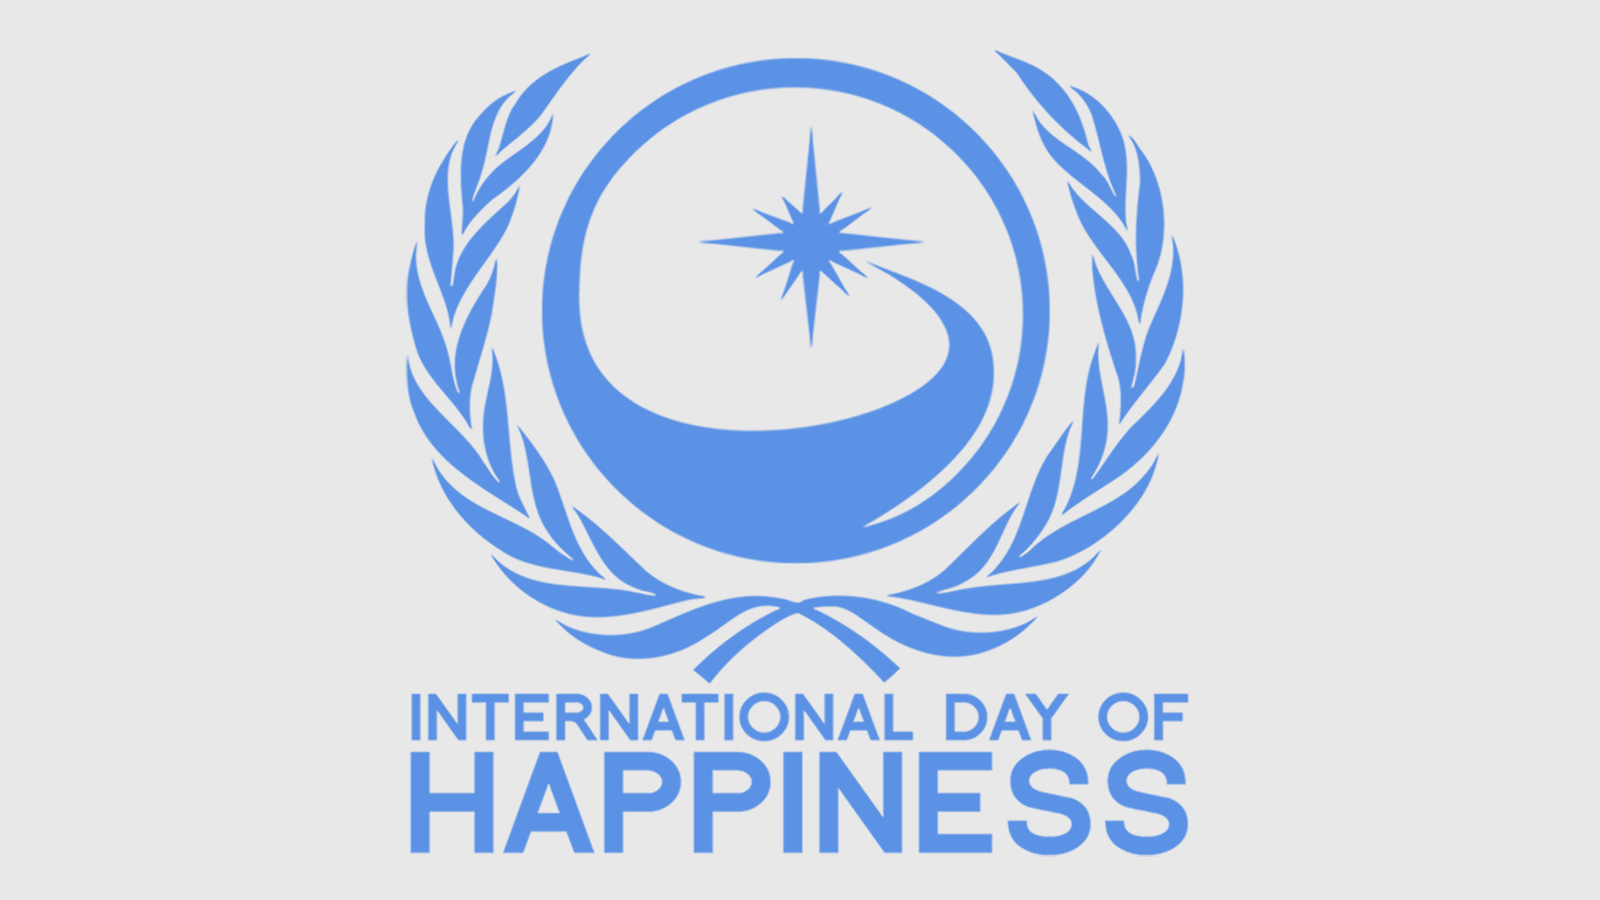 ‪شعار يوم السعادة العالمي‬ (مواقع التواصل)